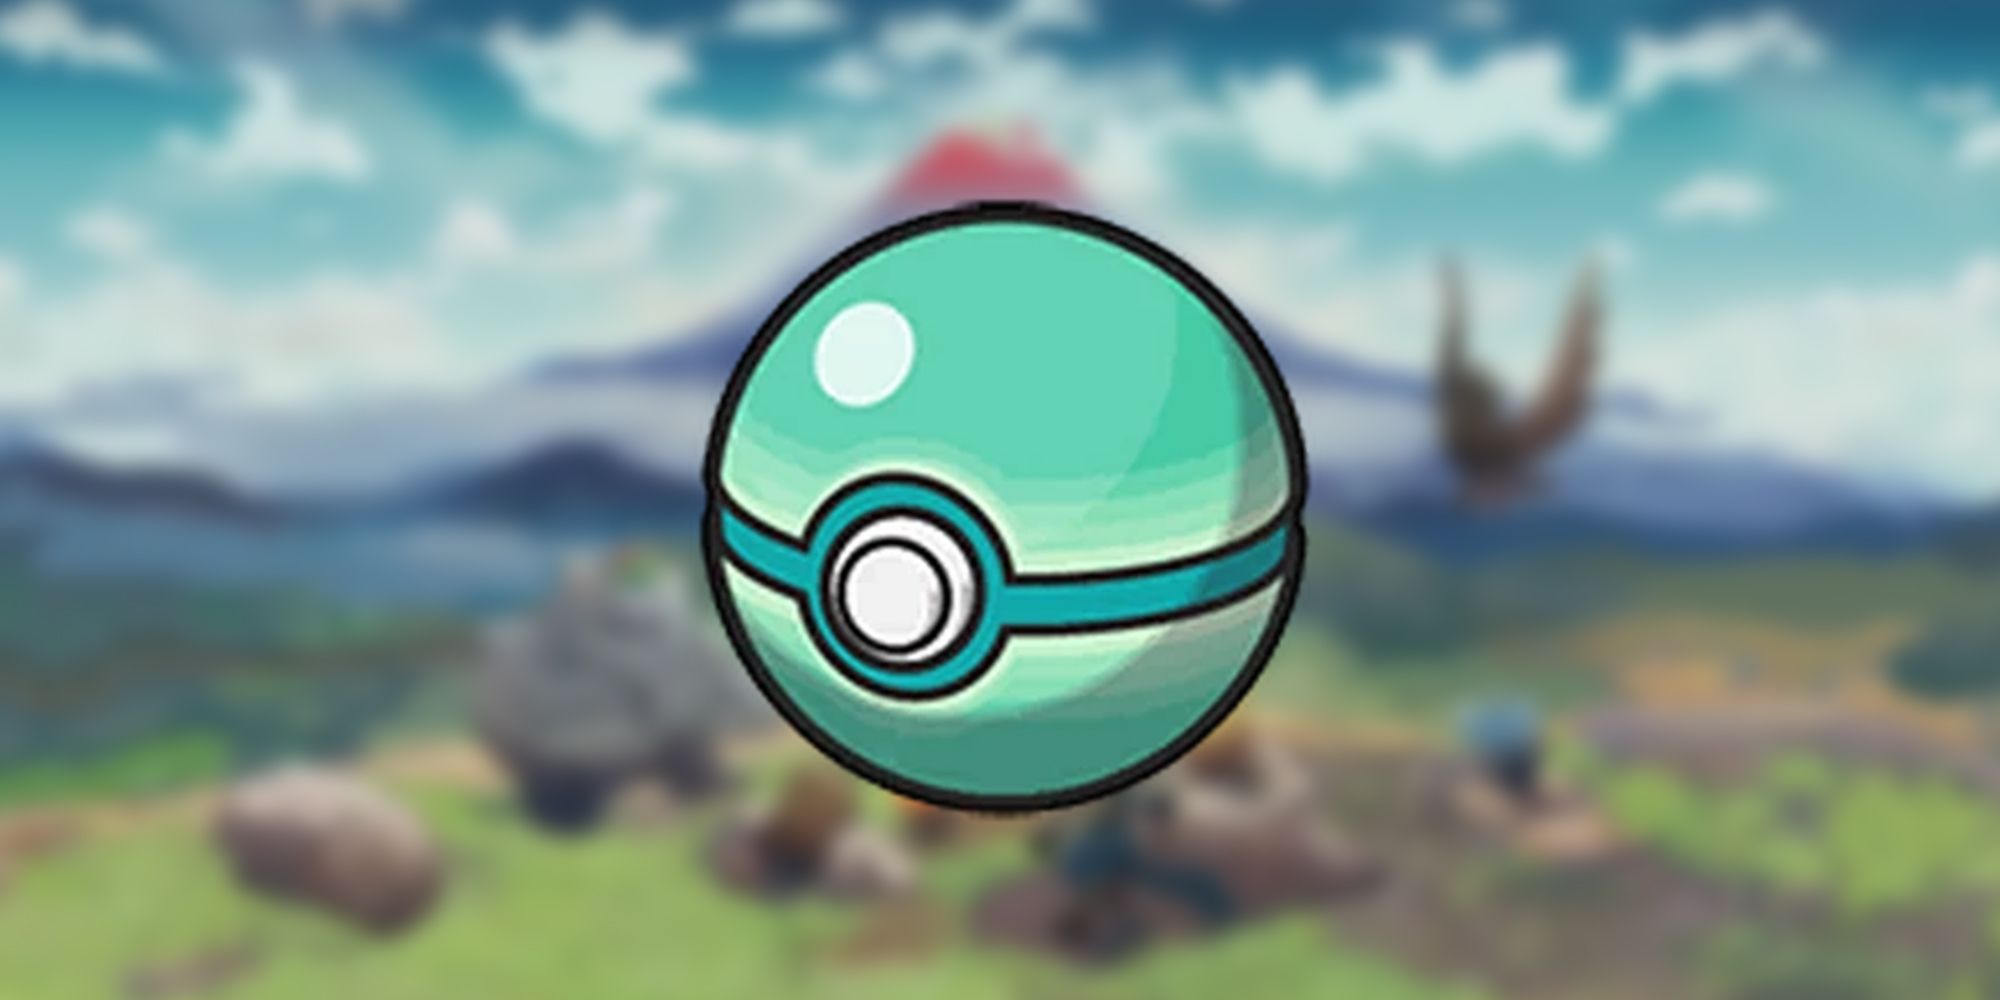 Strange Ball In Pokemon